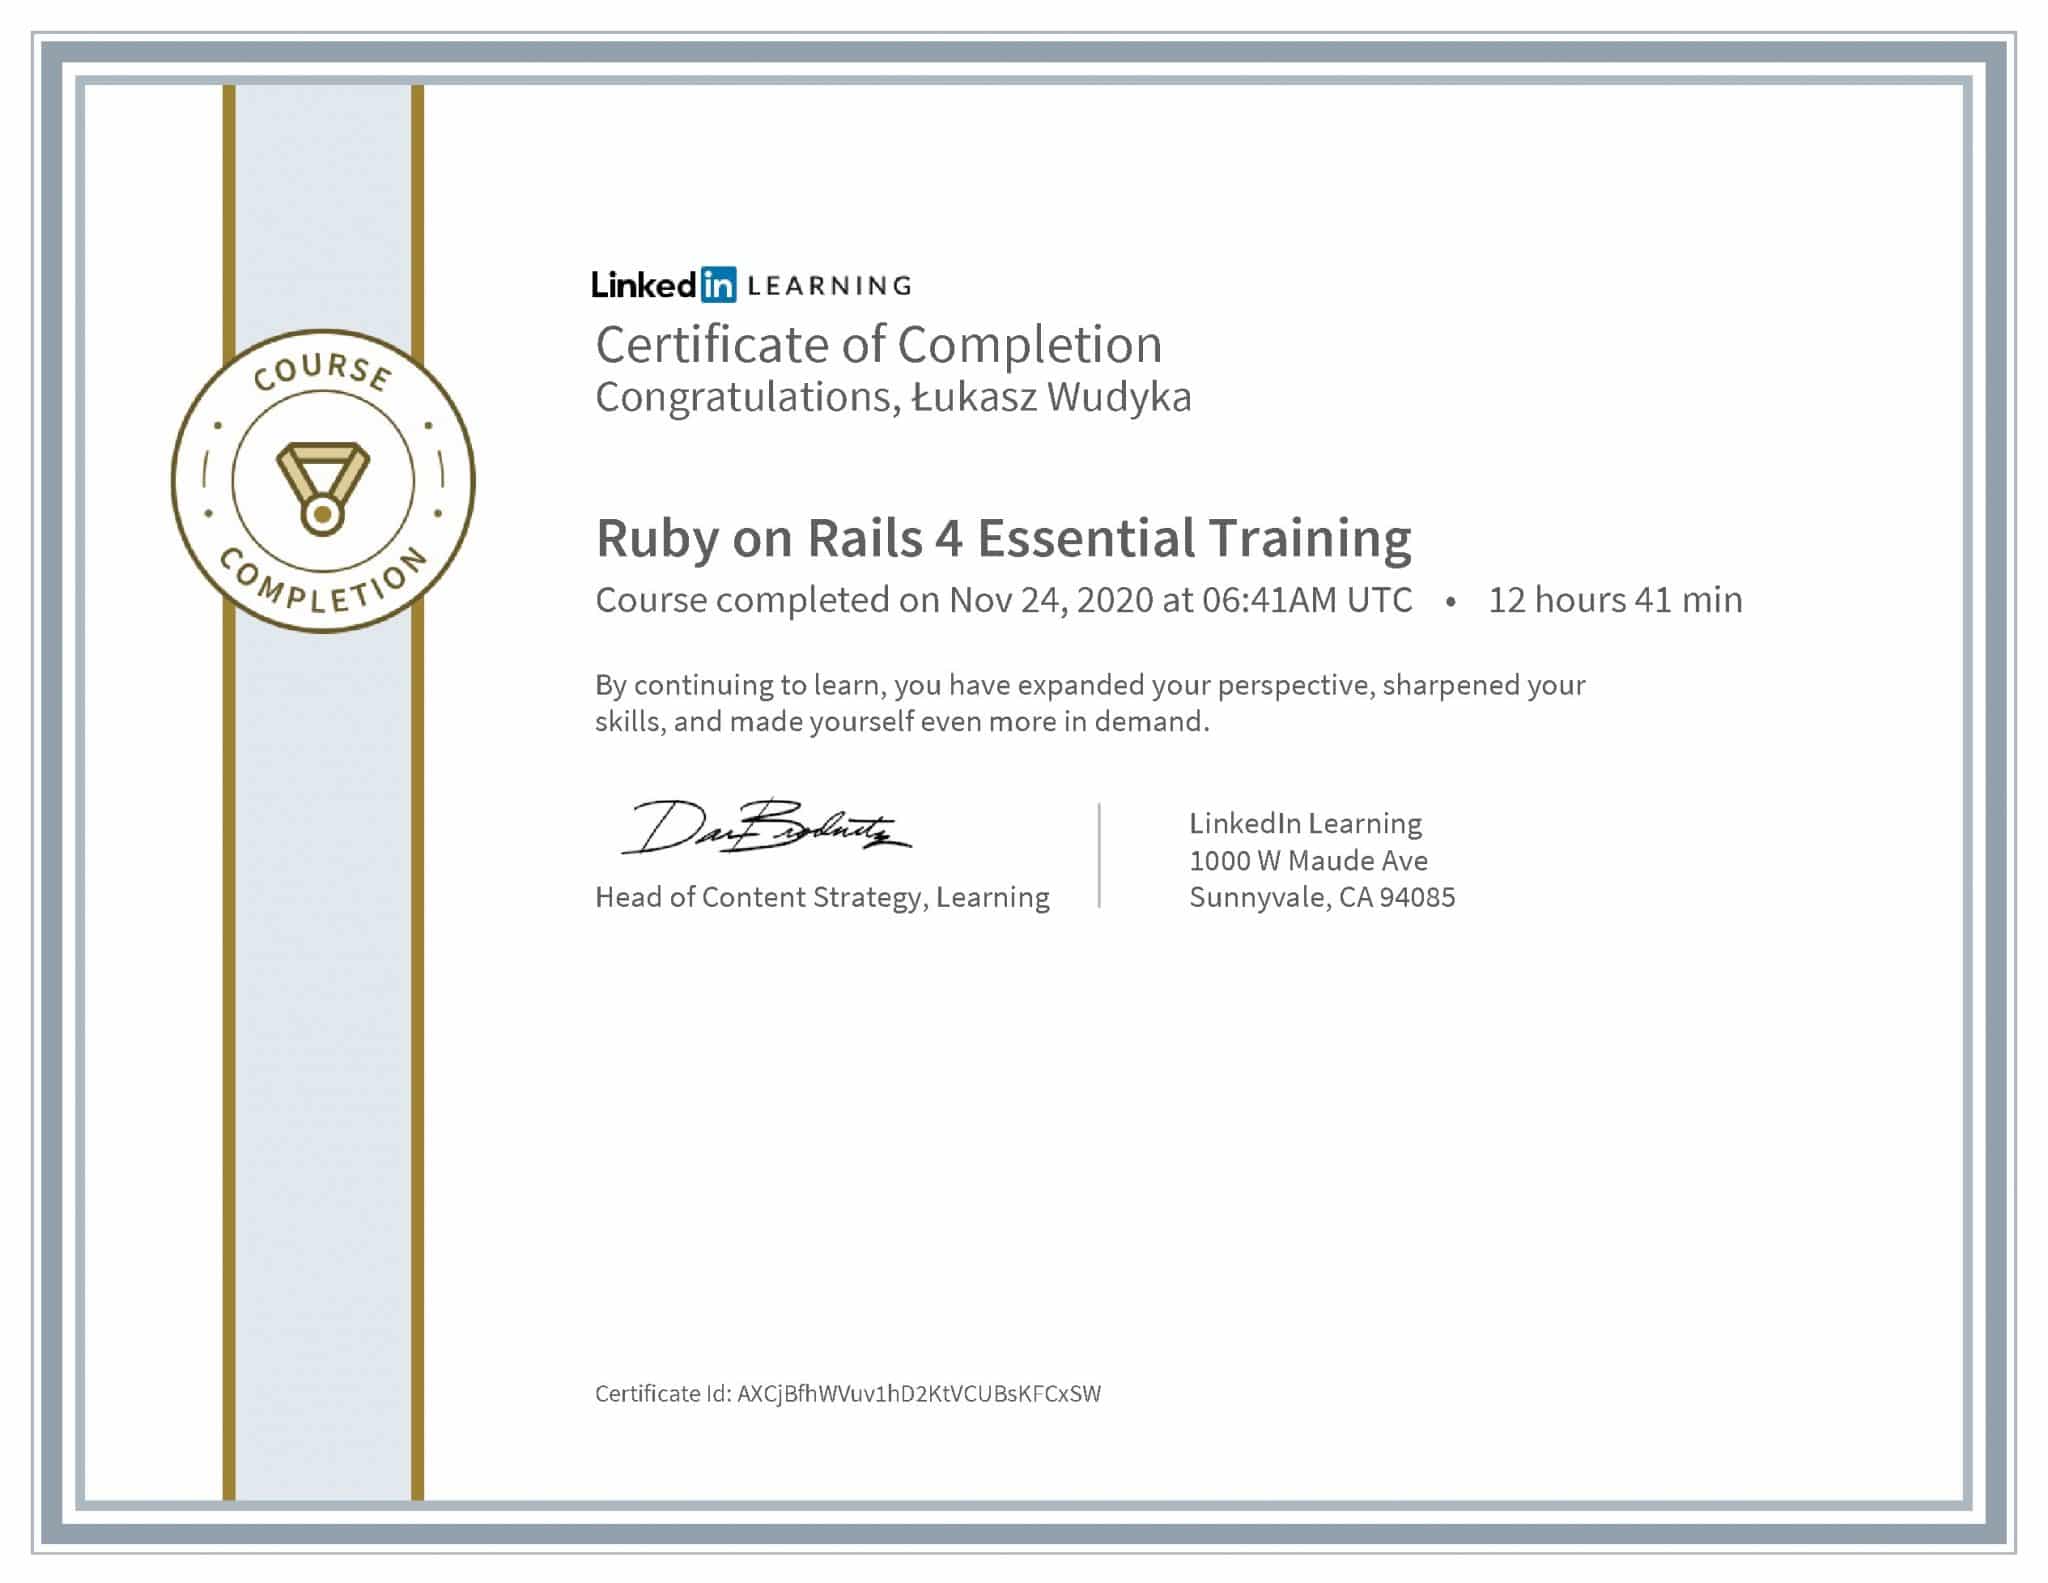 Łukasz Wudyka certyfikat LinkedIn Ruby on Rails 4 Essential Training